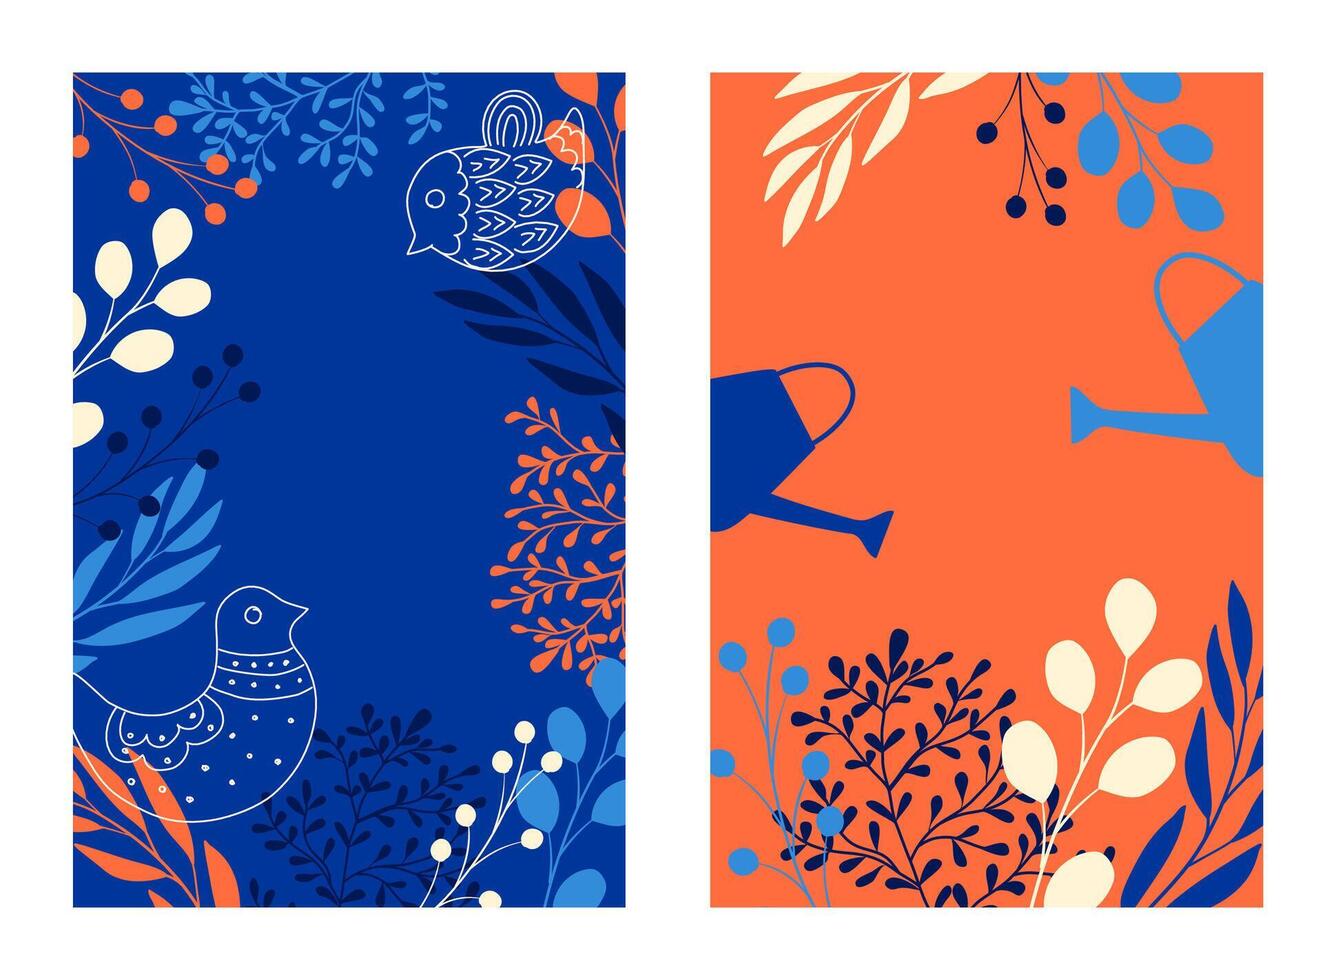 Vektor einstellen von beschwingt Hand gezeichnet Blumen- abstrakt Hintergründe mit Negativ Raum - - Banner, Poster, Startseite Design Vorlagen